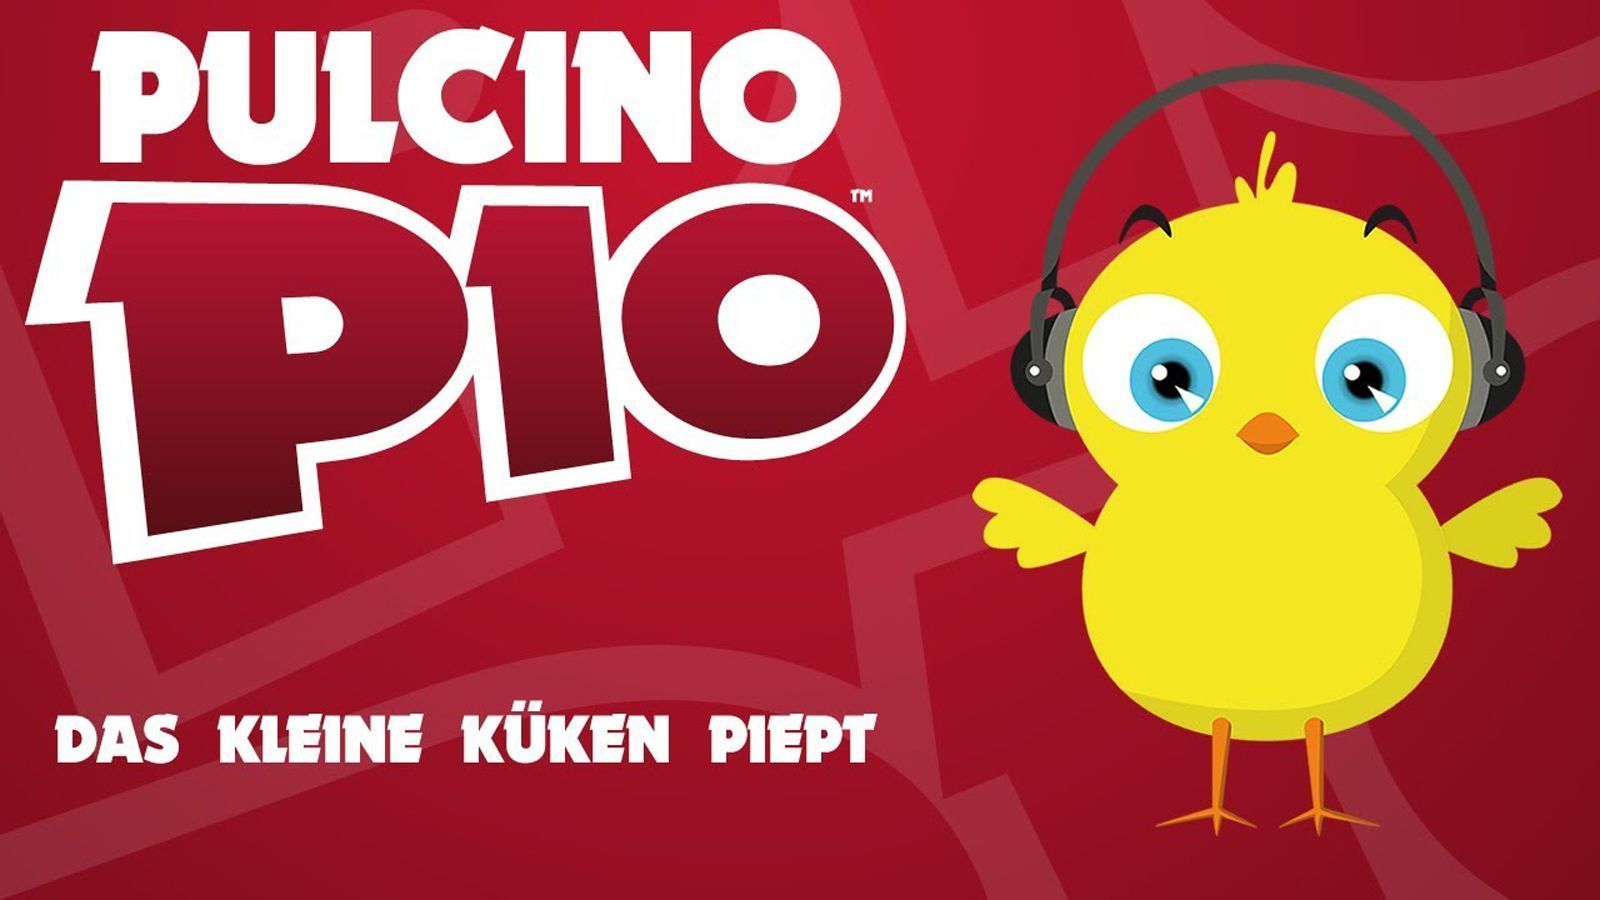 
                <strong>Im Radio ist ein Küken</strong><br>
                "Das kleine Küken piept" von Pulcino Pio erobert die Charts.
              